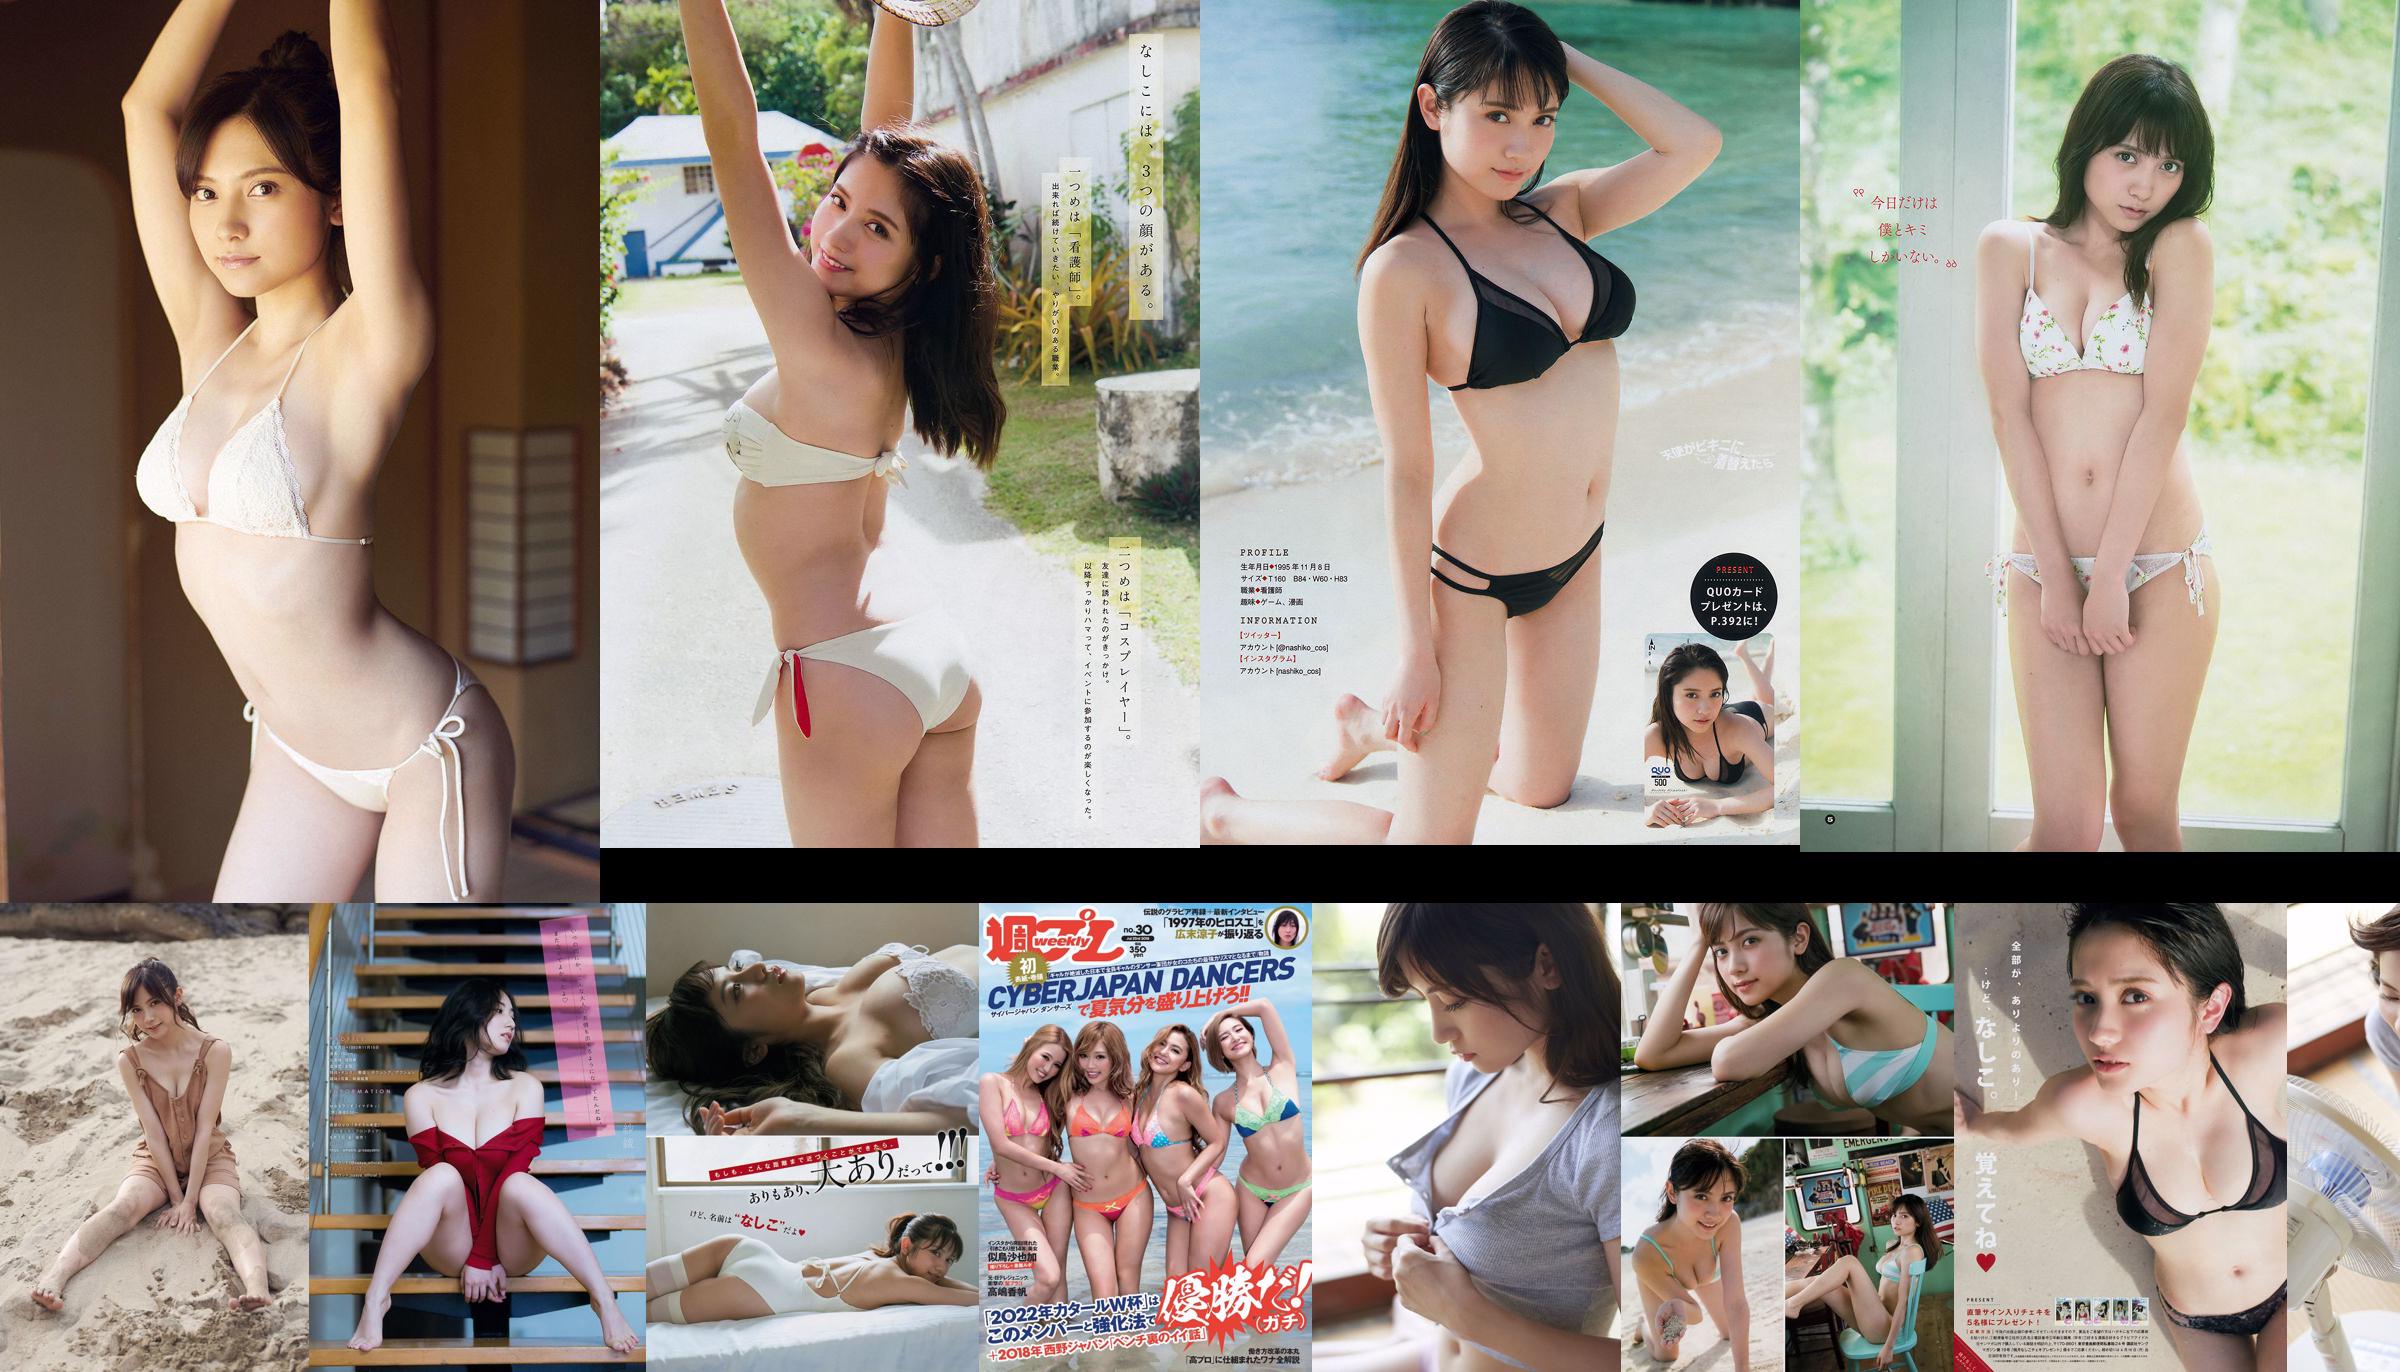 Nashiko Momotsuki Yuka Sugai Natsumi Ikema Raw Oyster Imoko Sae Murase Mao Akutsu [Semanal Playboy] 2018 No.23 Photo No.af6cef Página 3